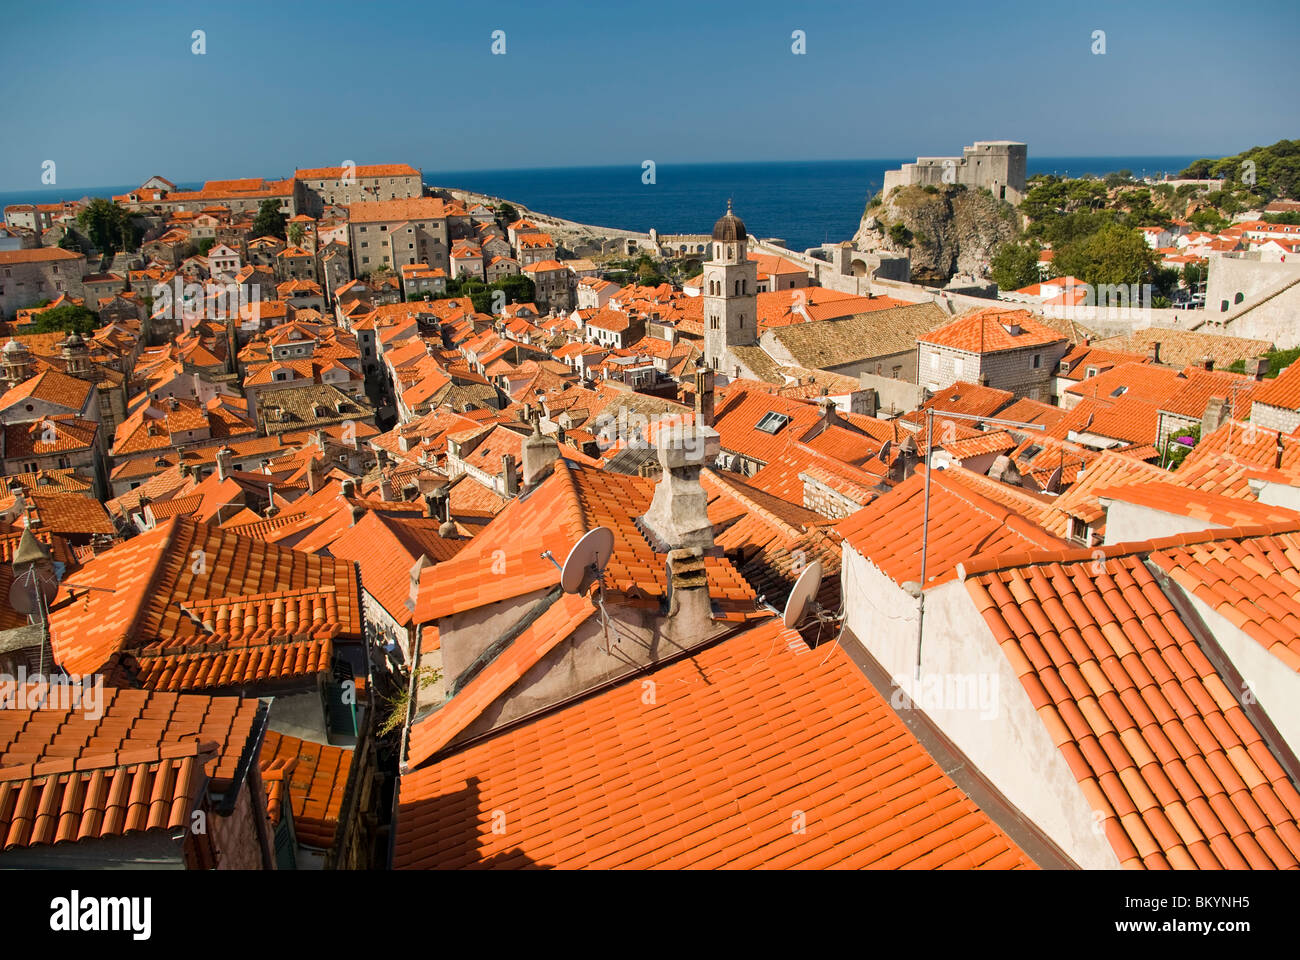 Croatia; Hrvartska; Kroatien; Dubrovnik, Old town, harbor, red roofs, fortification wall, seen from MinčetaTower Stock Photo